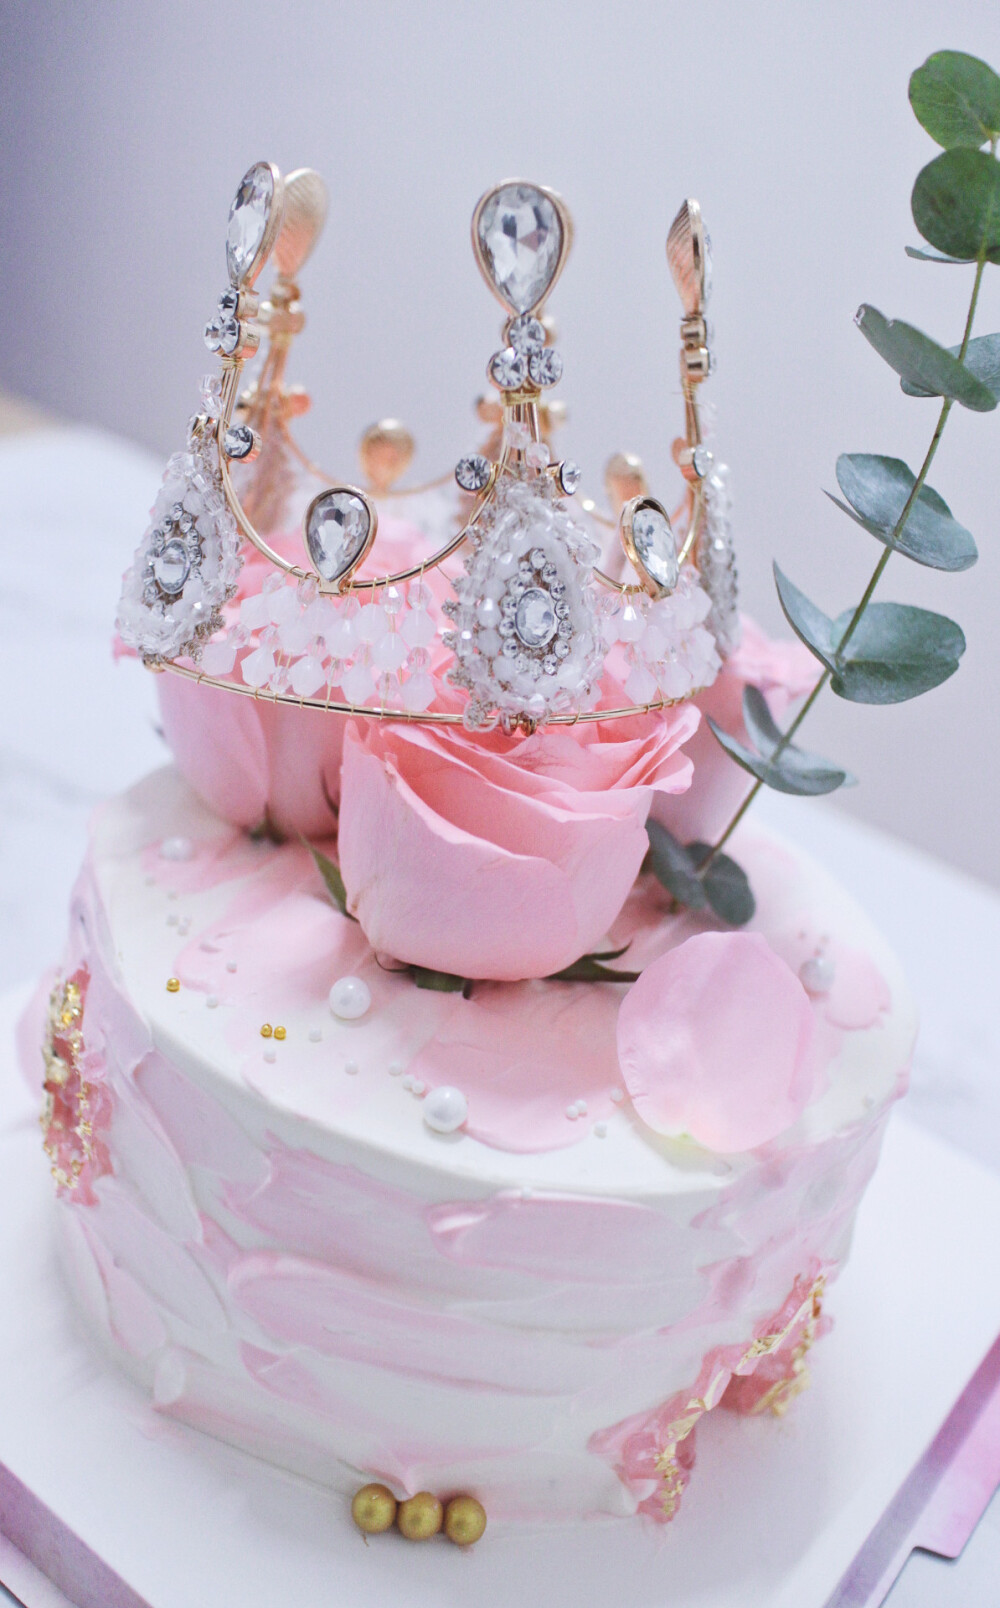 复古皇冠玫瑰蛋糕